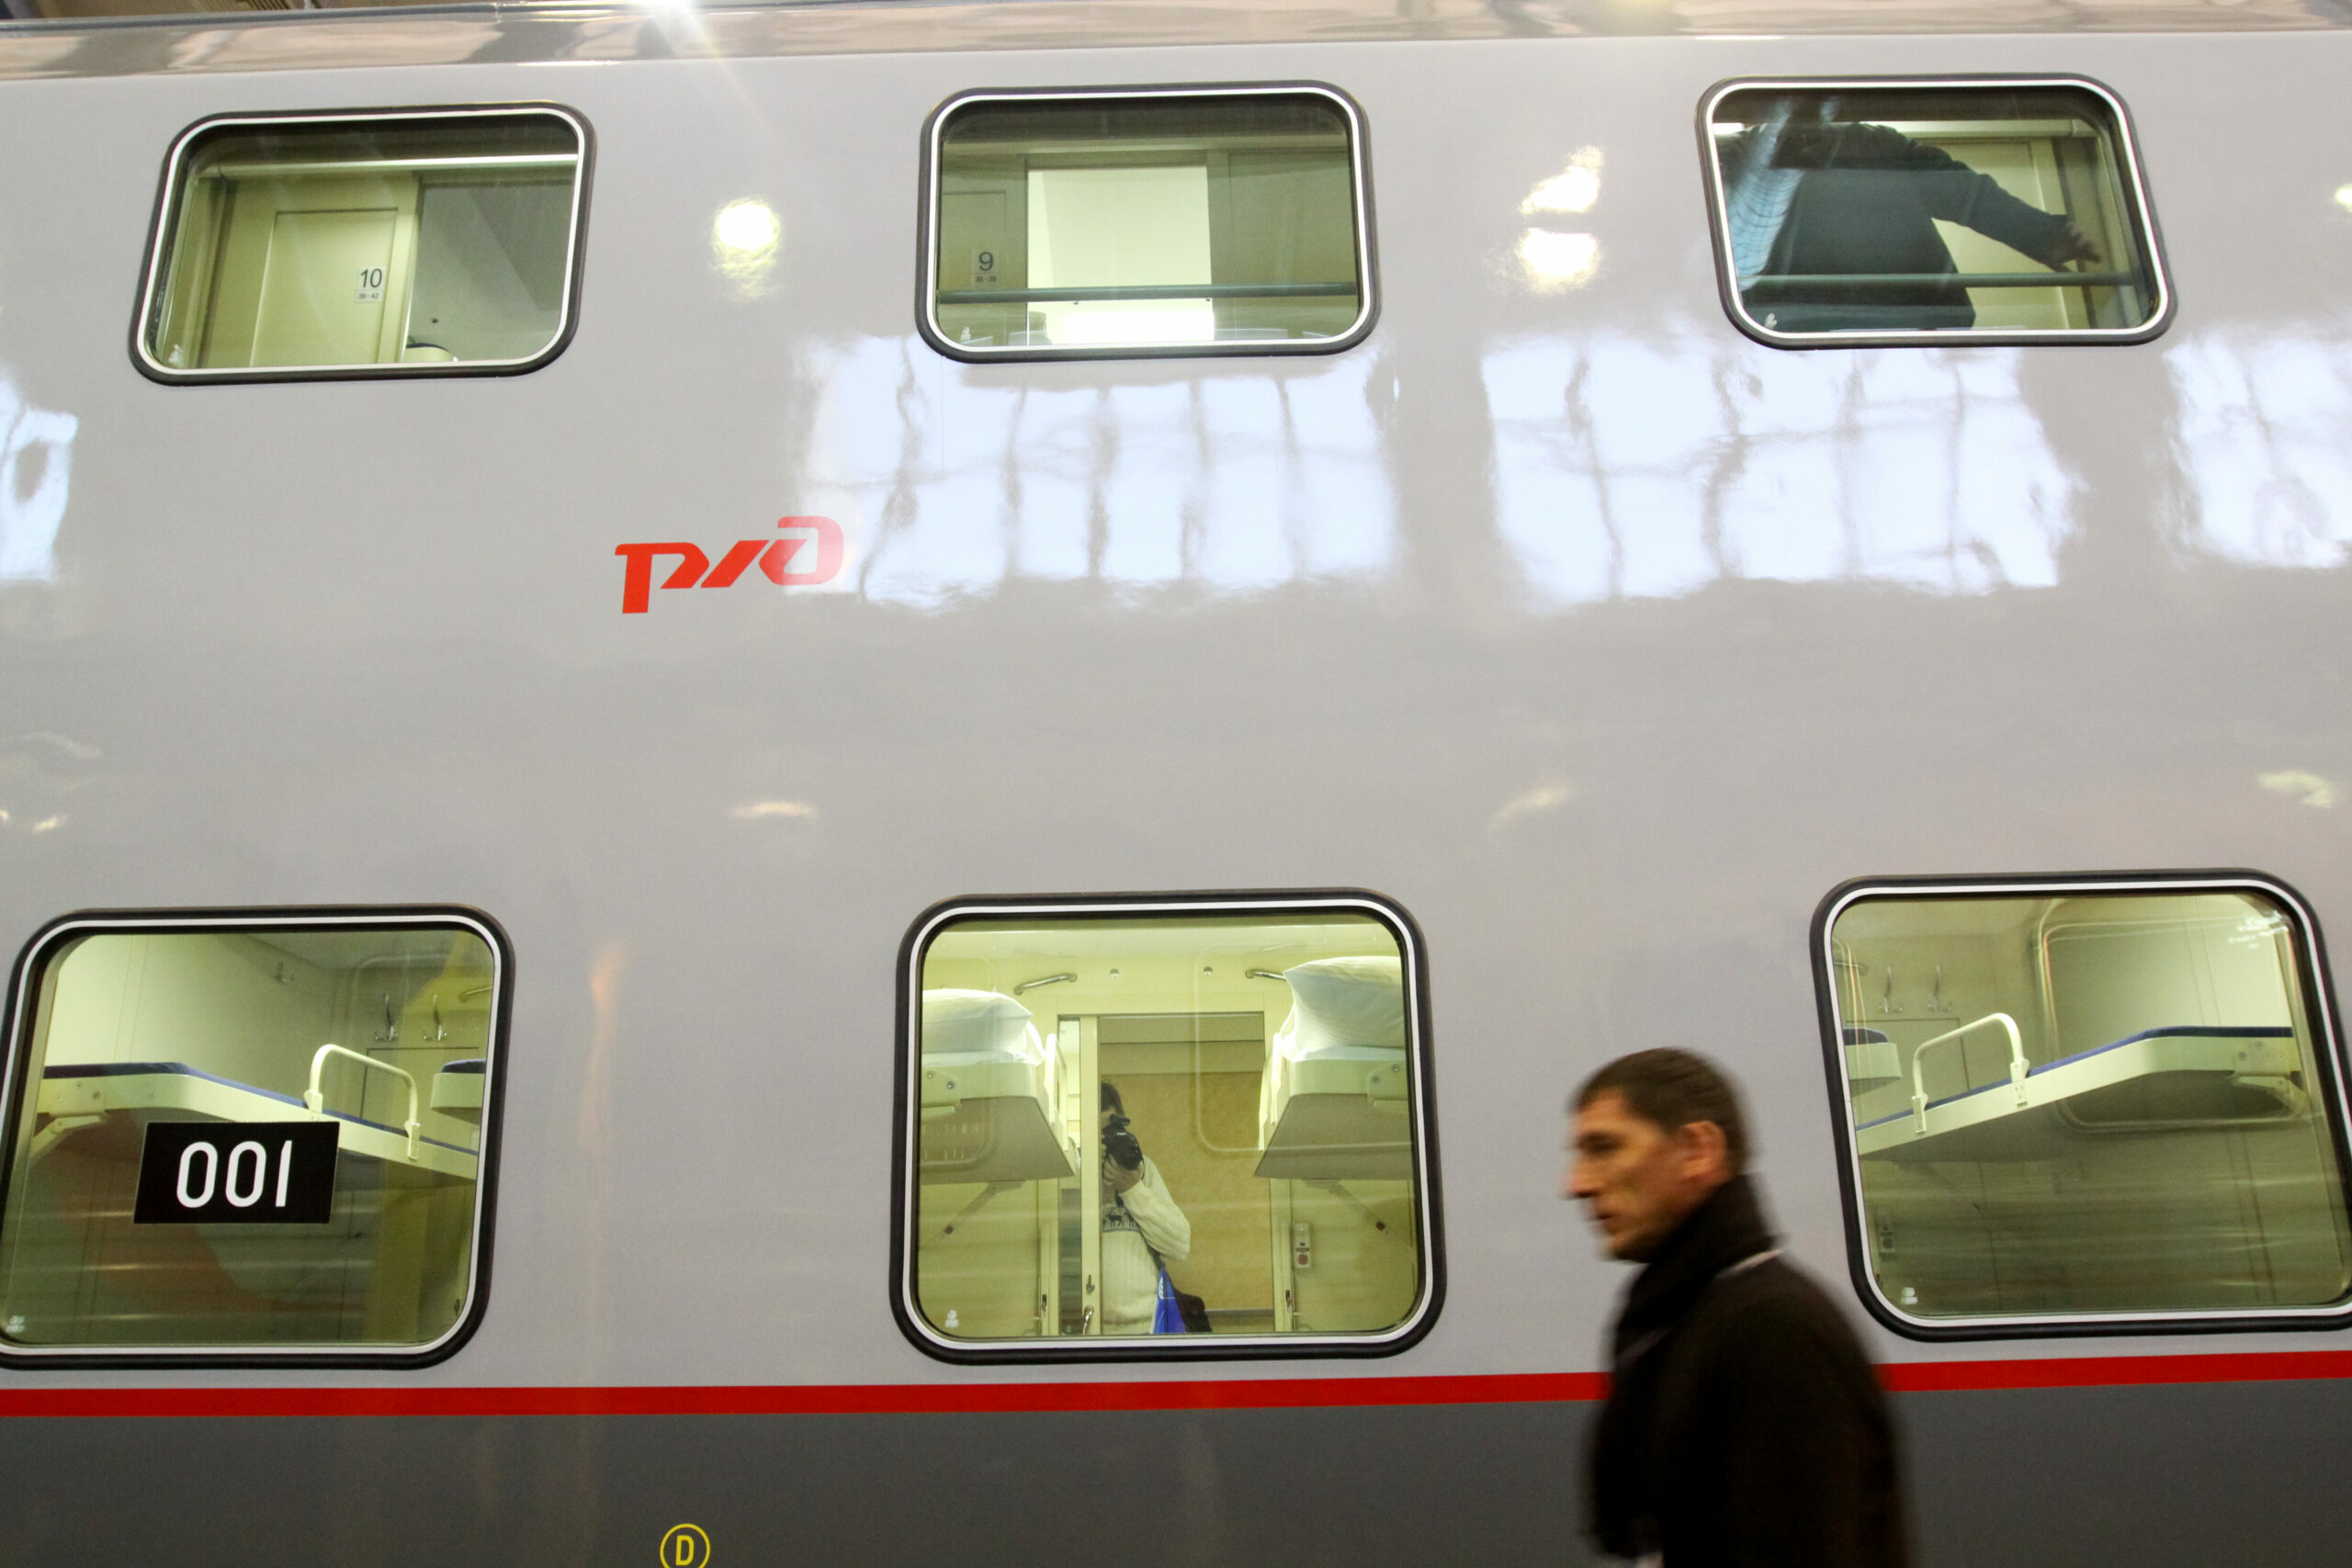 двухэтажный поезд из москвы в санкт петербург